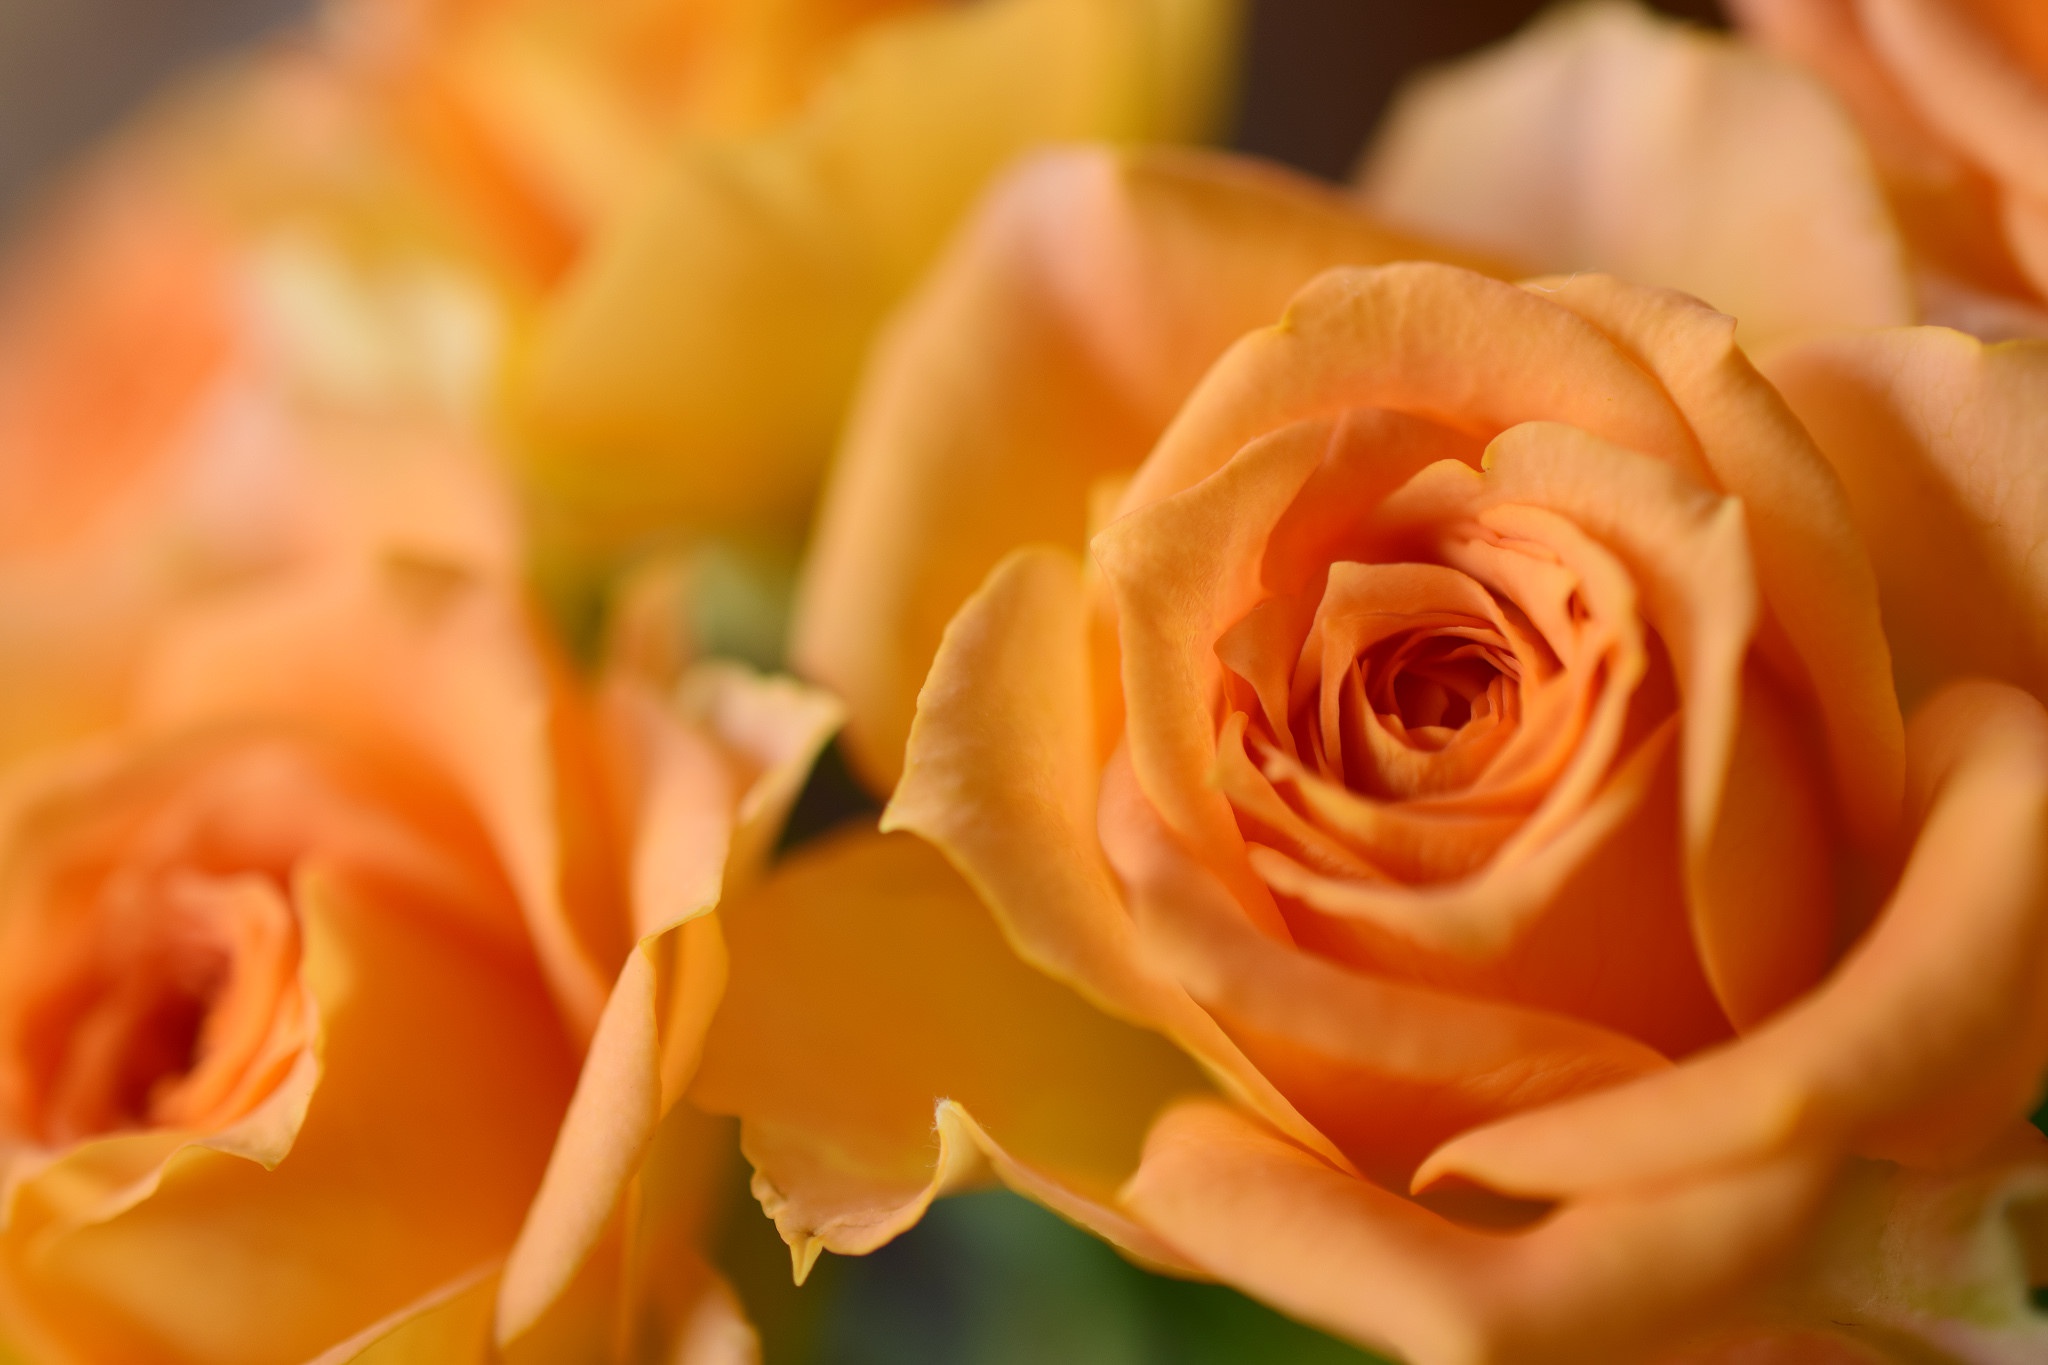 Скачать обои бесплатно Цветок, Макро, Роза, Земля/природа, Персиковый Цветок, Флауэрсы картинка на рабочий стол ПК